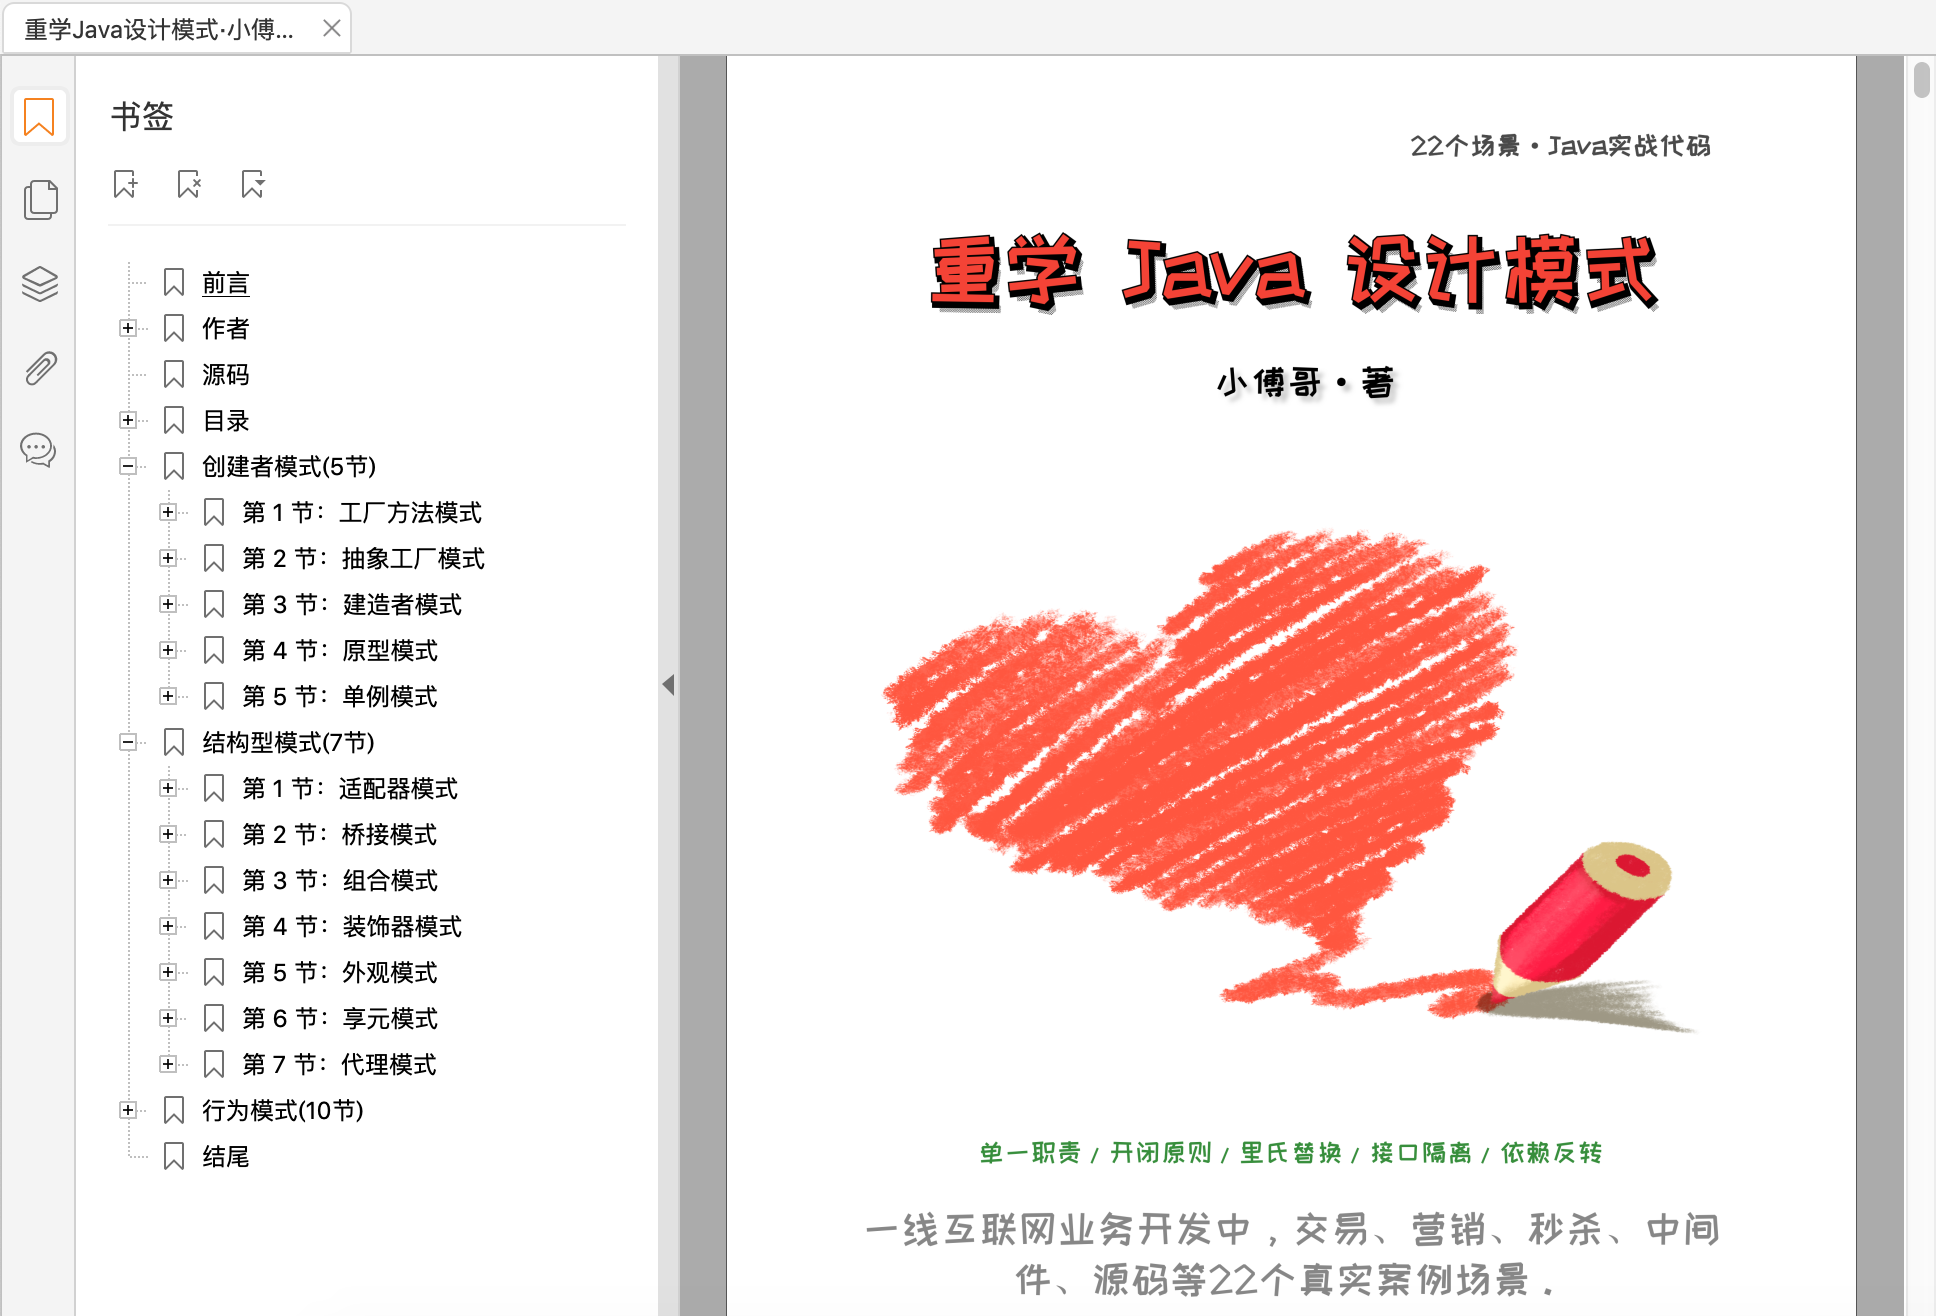 《重学 Java 设计模式》PDF 出炉了 - 小傅哥，肝了50天写出18万字271页的实战编程资料